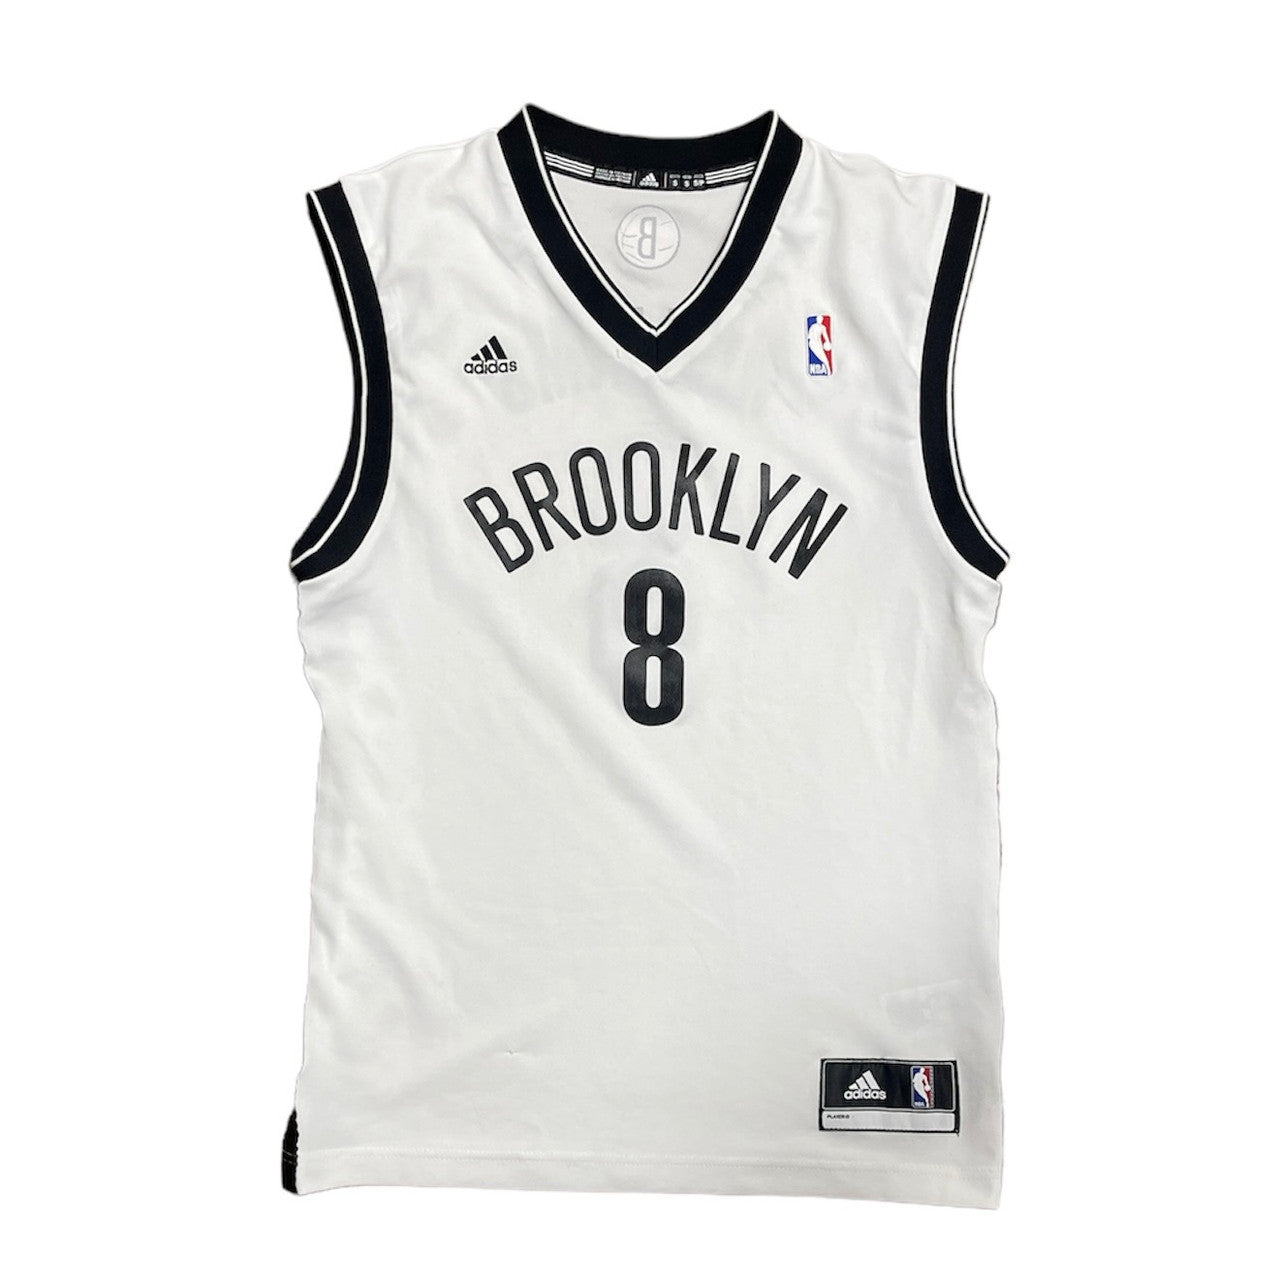 Adidas Brooklyn Nets Williams NBA Jersey